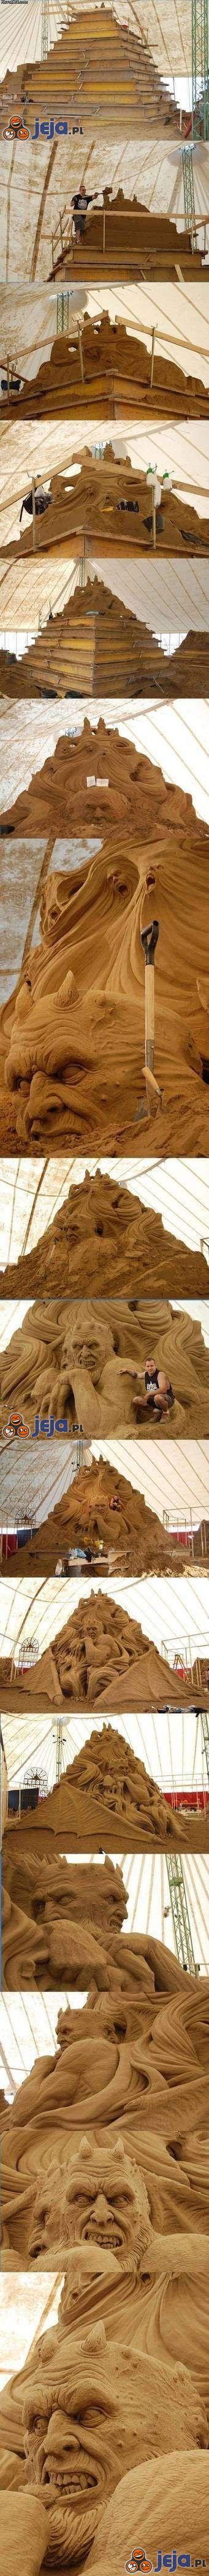 Jak się buduje rzeźby z piasku?